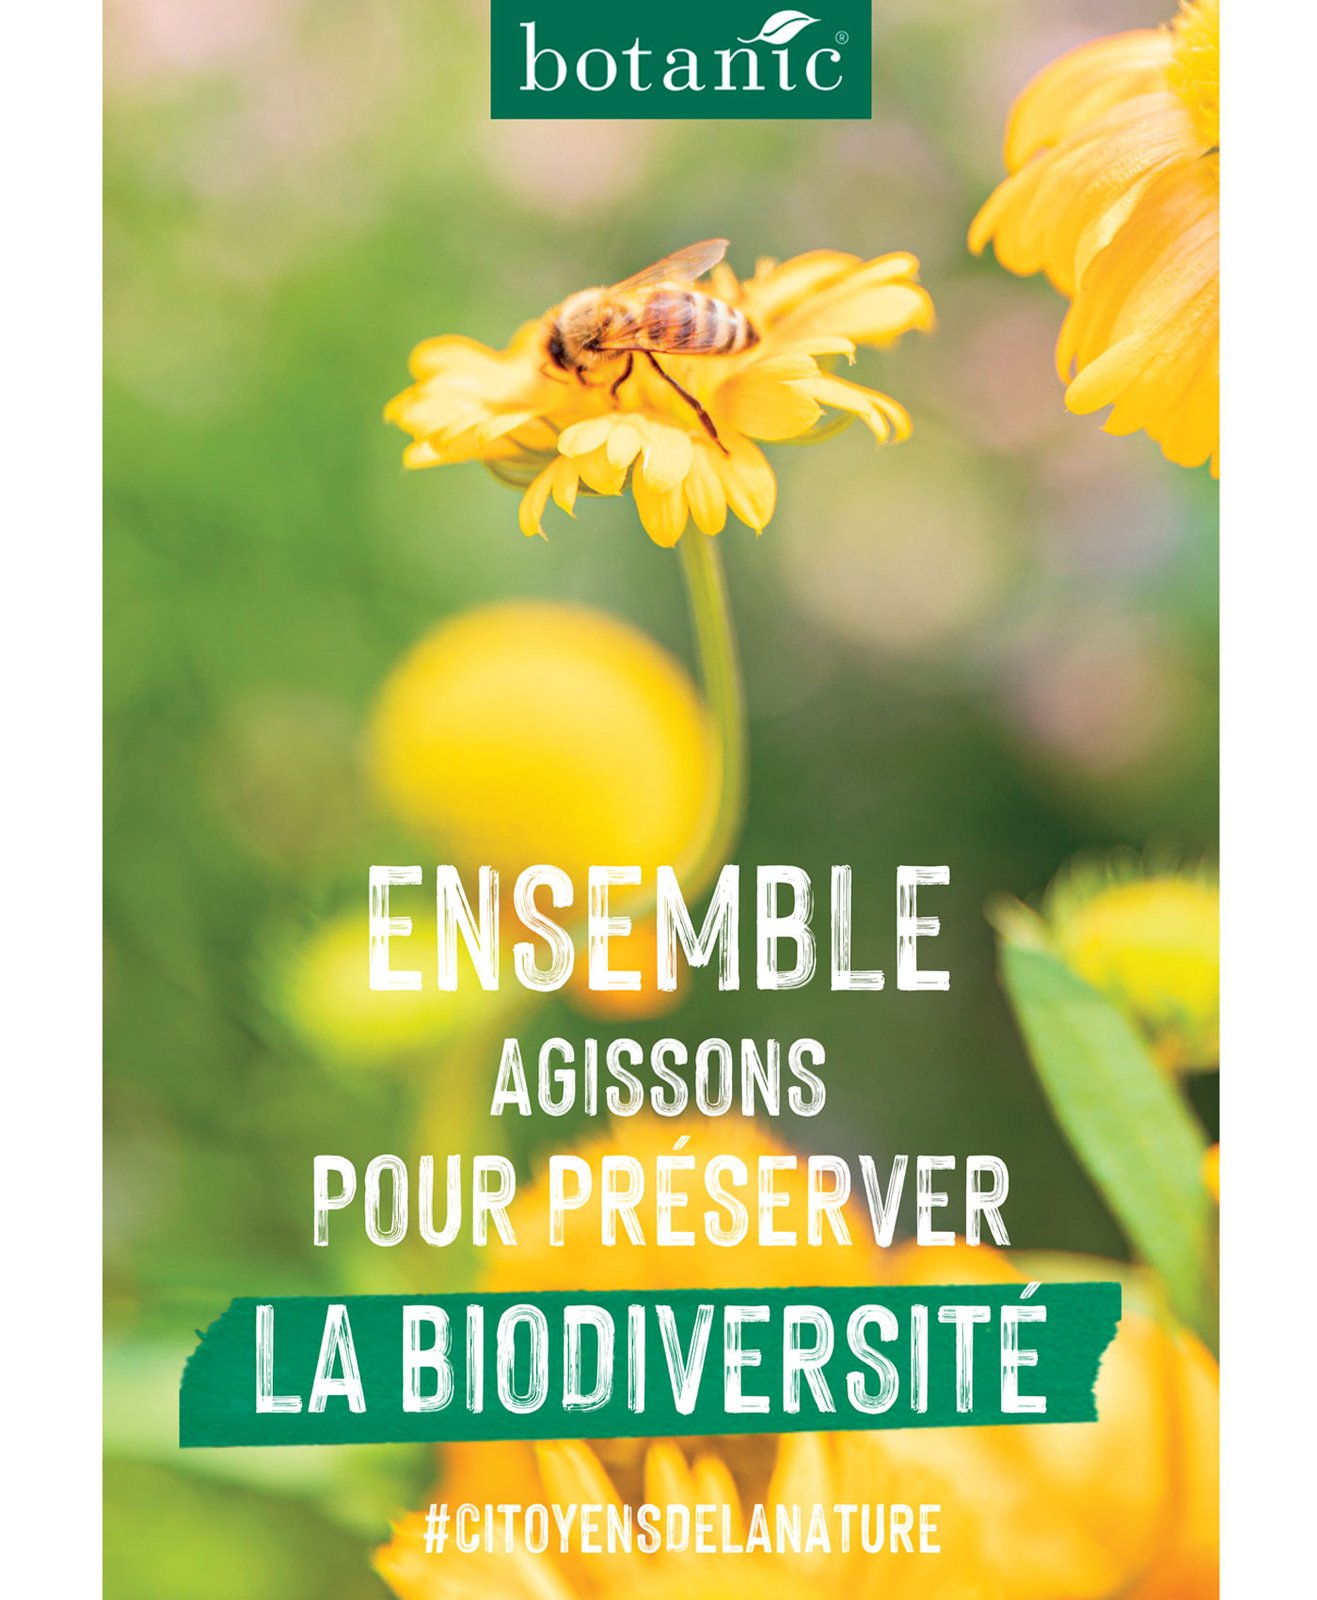 Engagement biodiversité